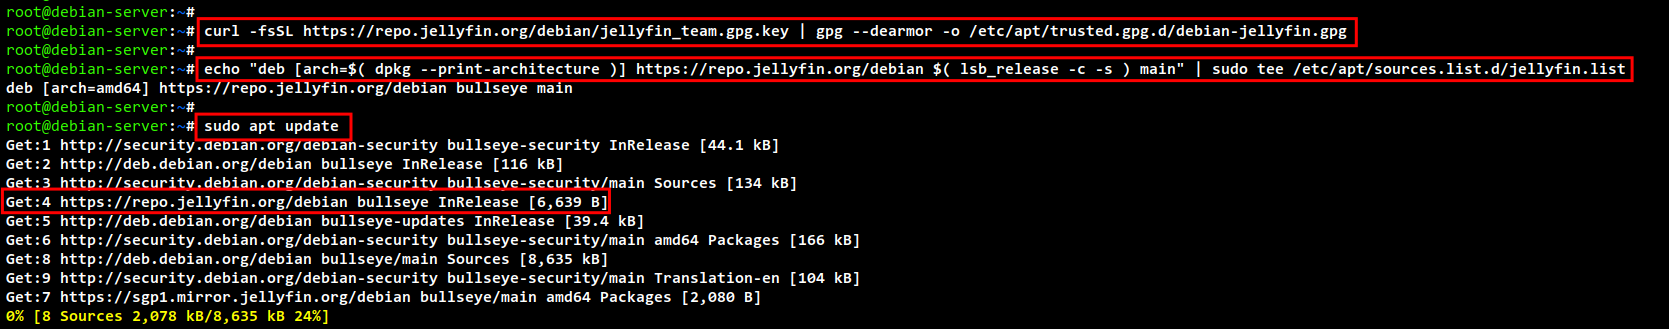 How do I set up Jellyfin Media Server under Debian linux 